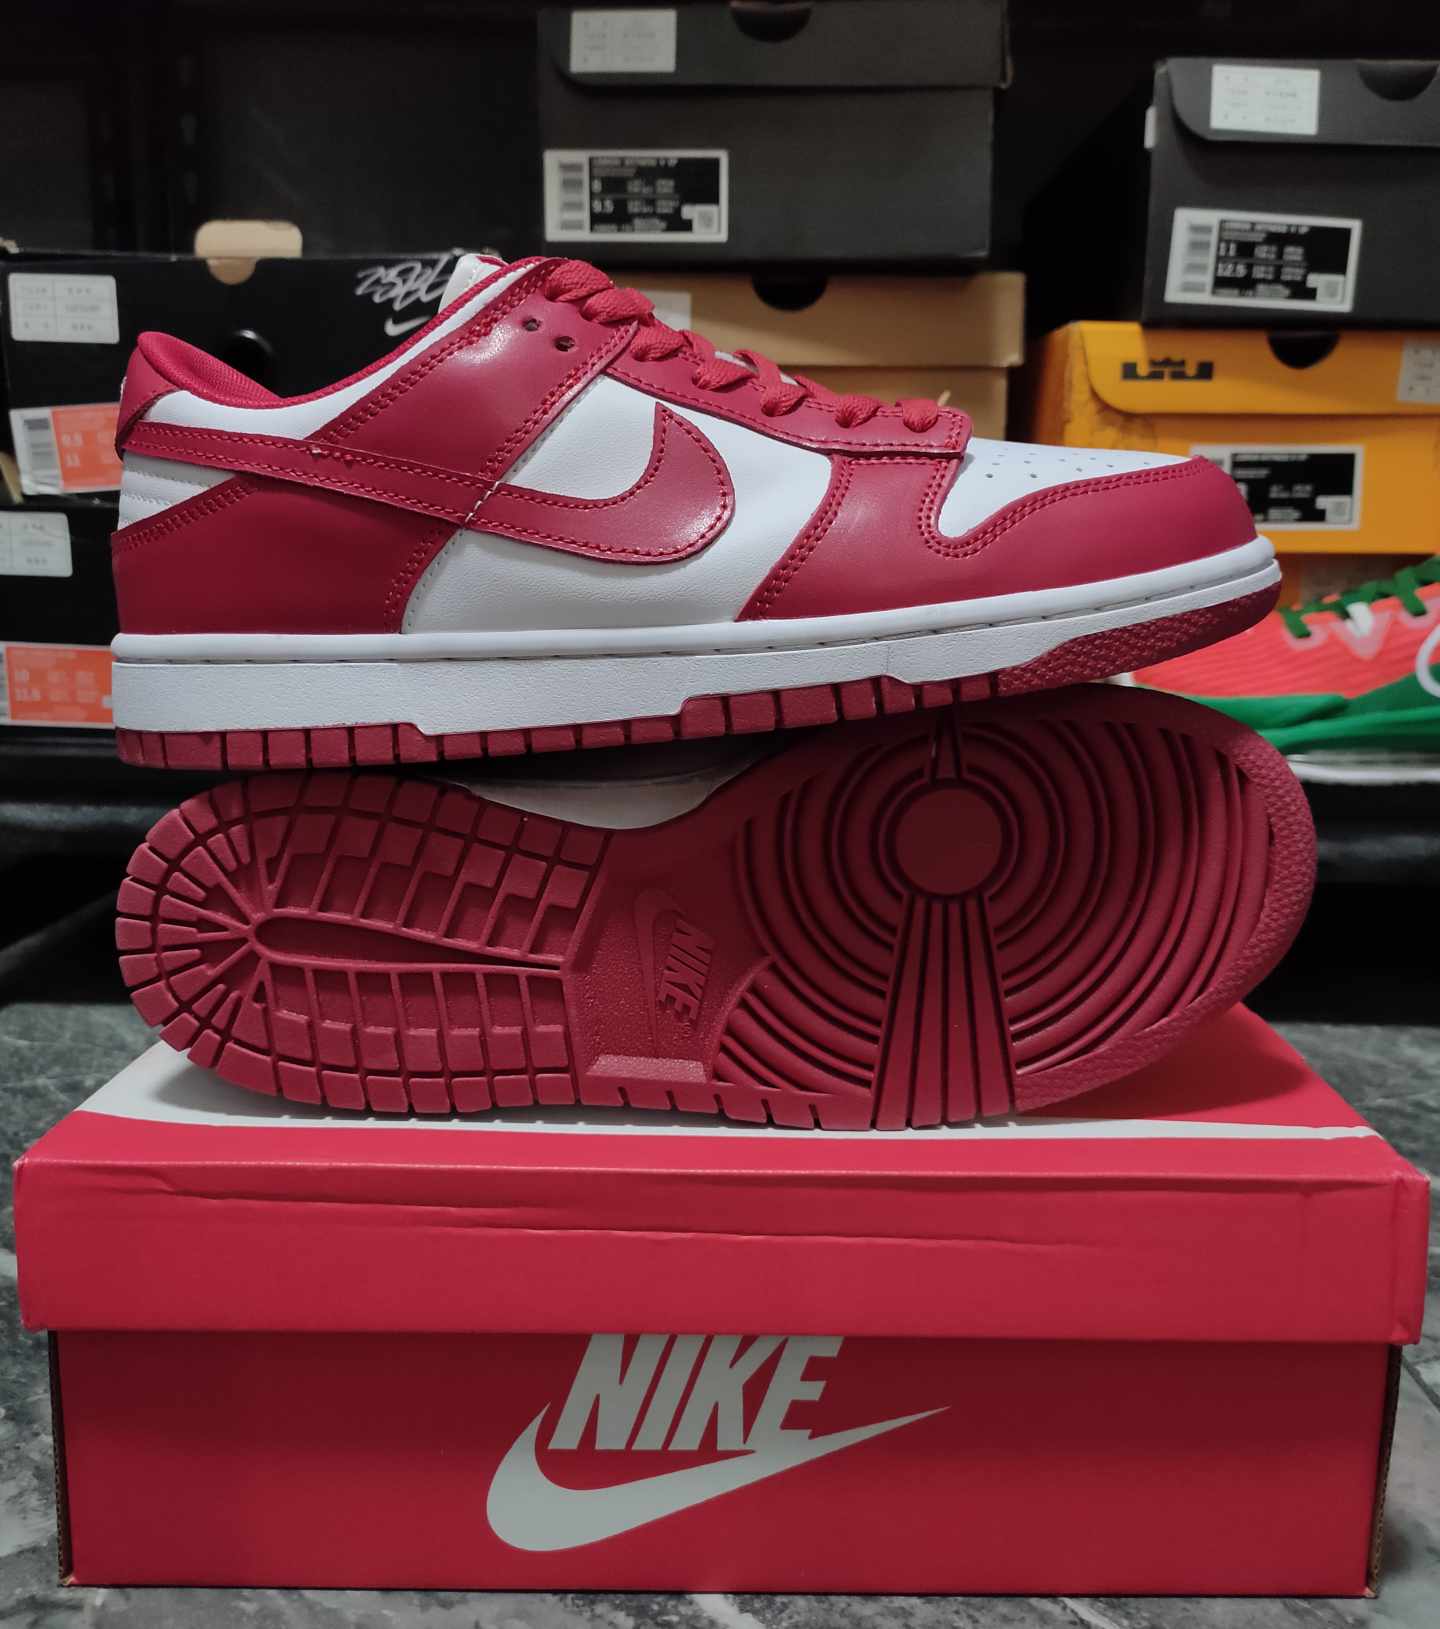 Nike SB Dunk Low "University Red"